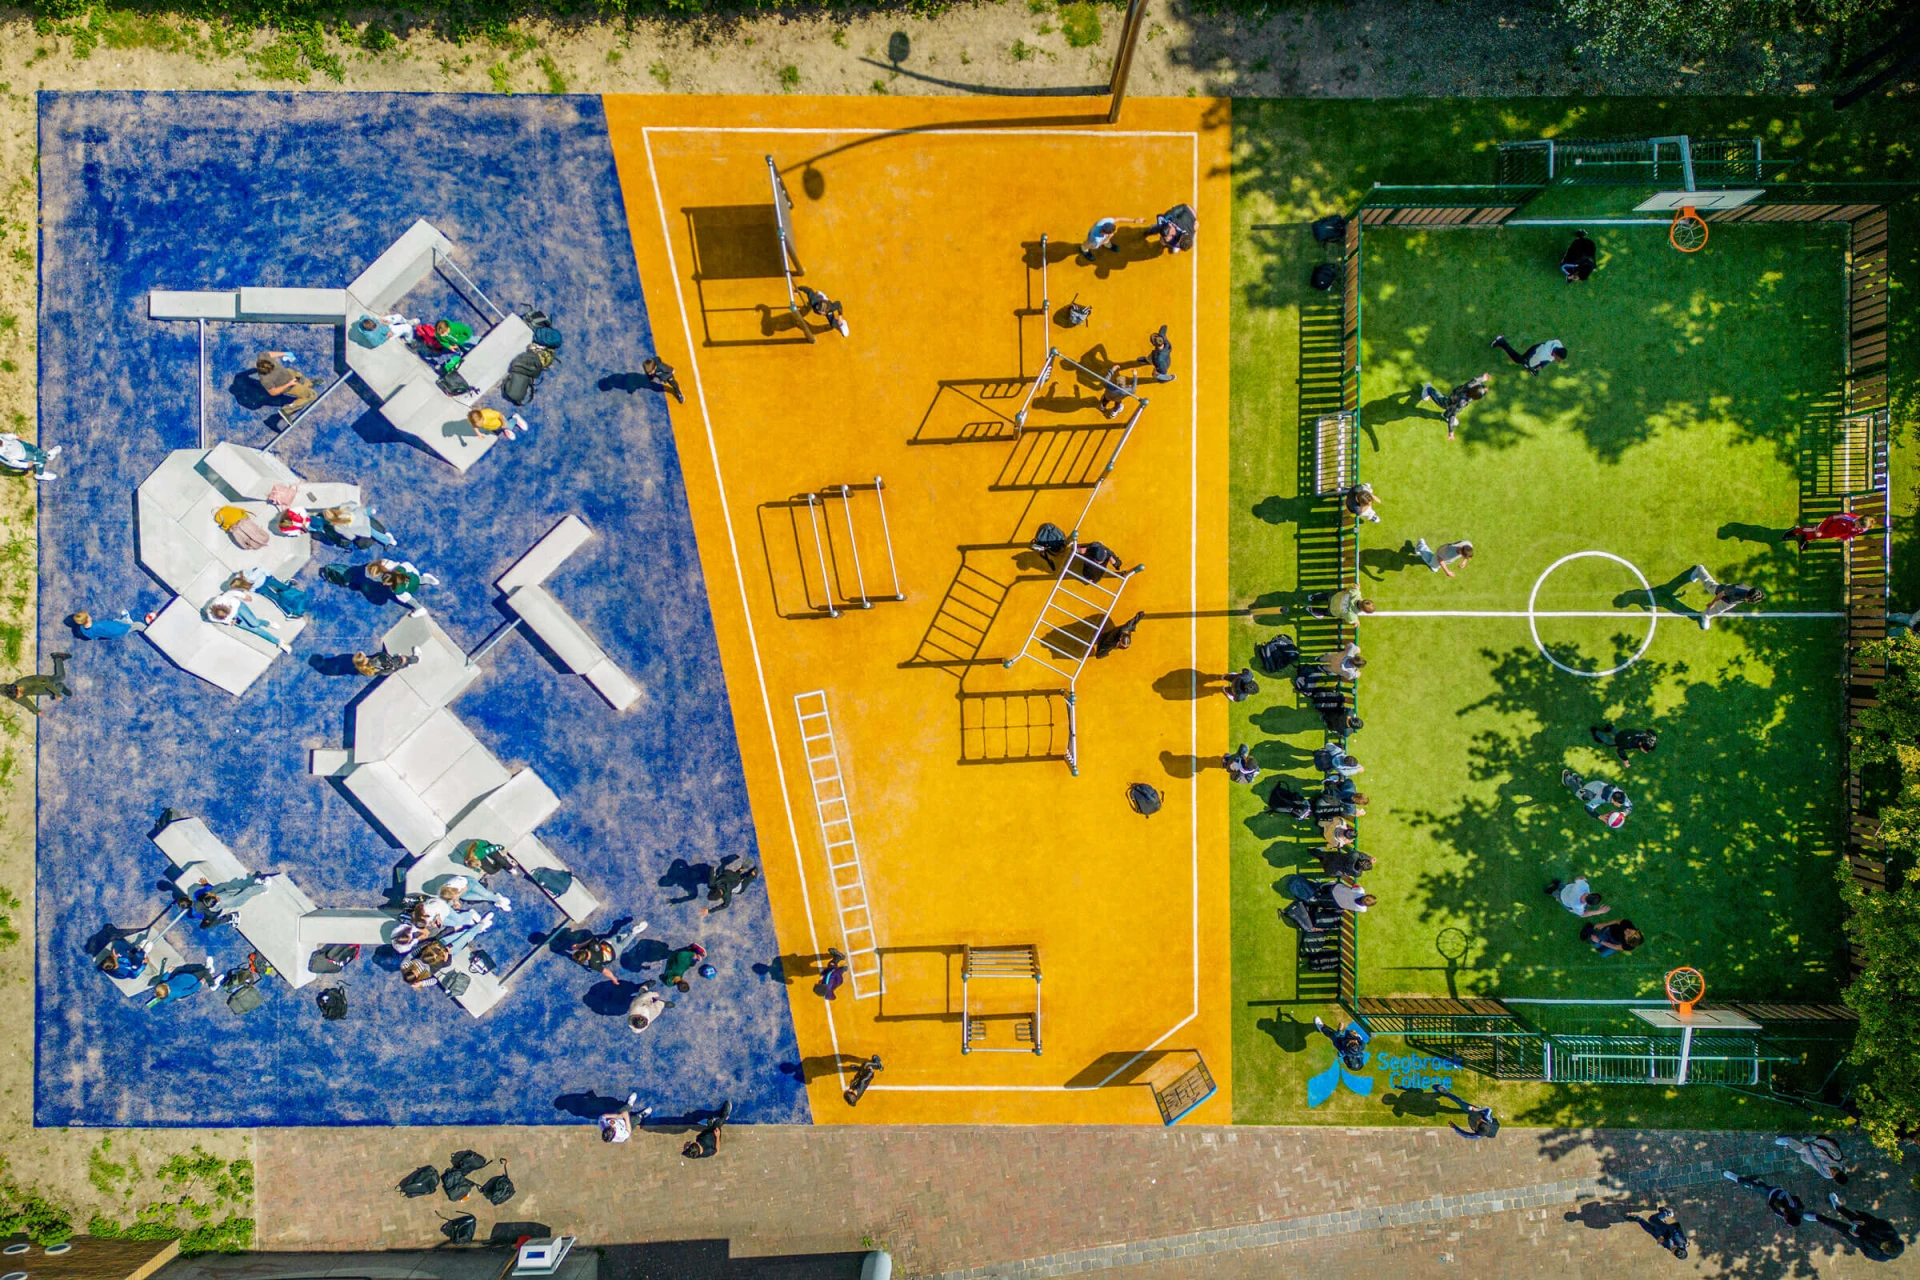 Et luftfoto af en skolegård med fitness- og boldspilsområde.